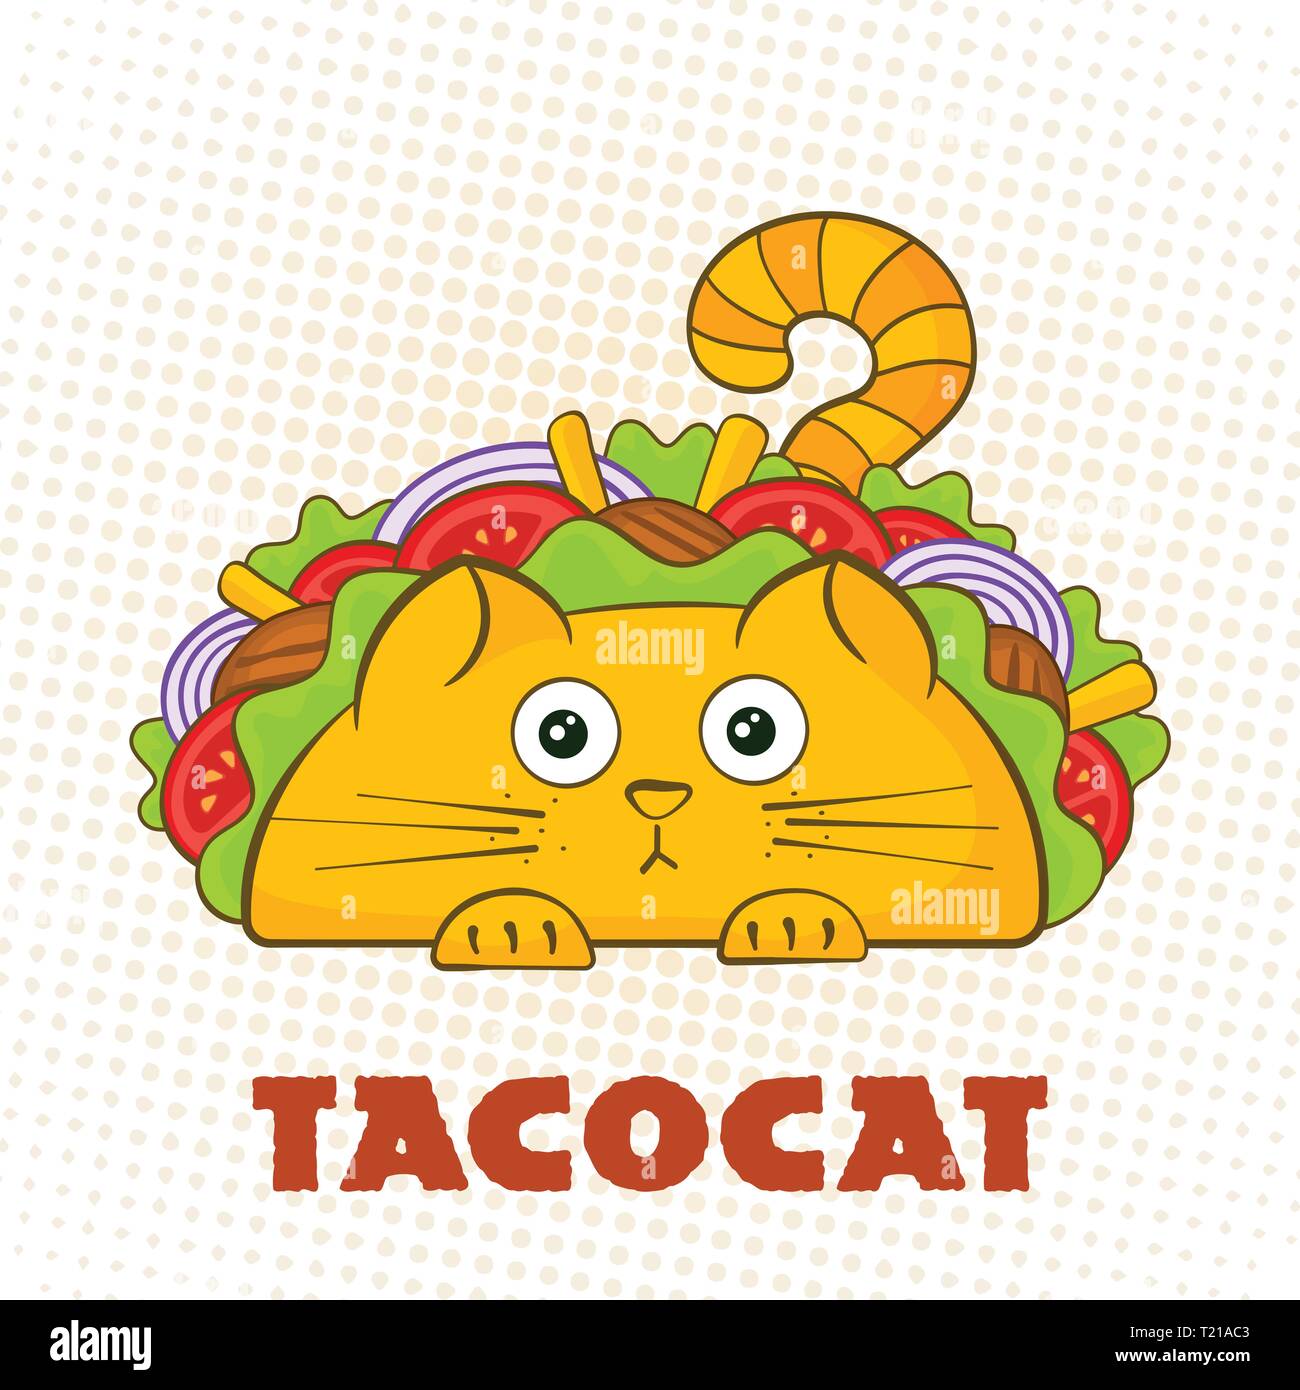 Tacocat personnage surprise taco fast food vector illustration symbole. Mascotte chat perplexe avec de délicieuses viandes de boeuf, salade et tomate dans Tacocat signe avec taco traditionnels pour la promotion de médias sociaux Illustration de Vecteur